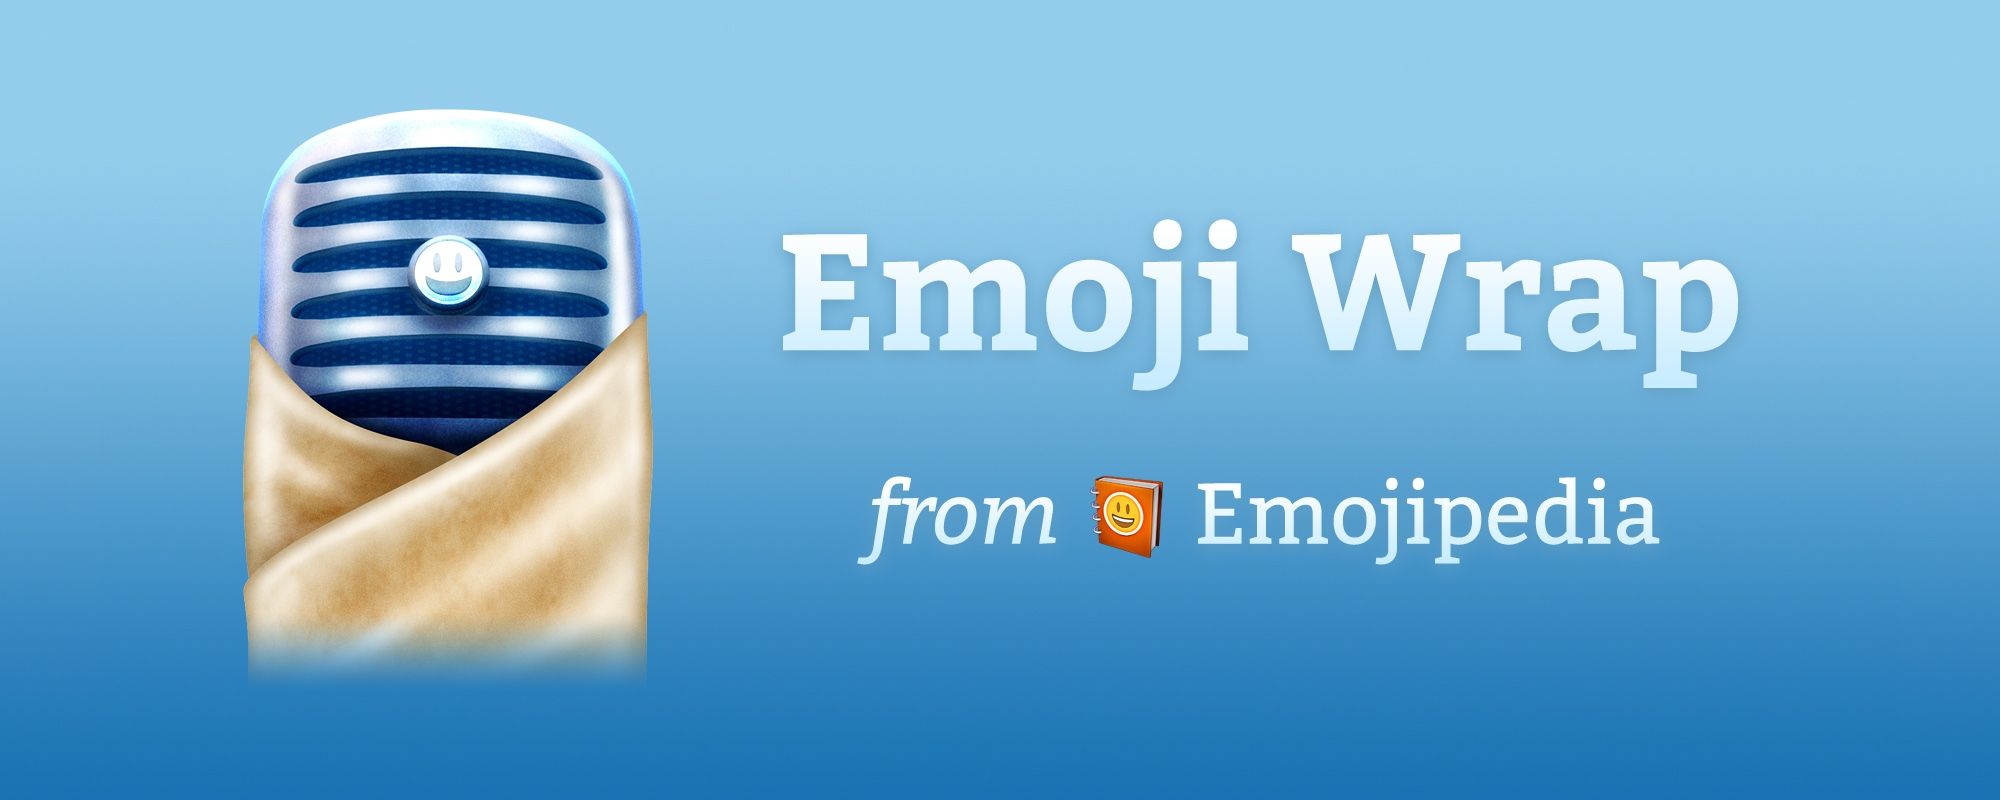 Emoji Wrap Podcast Starts Today